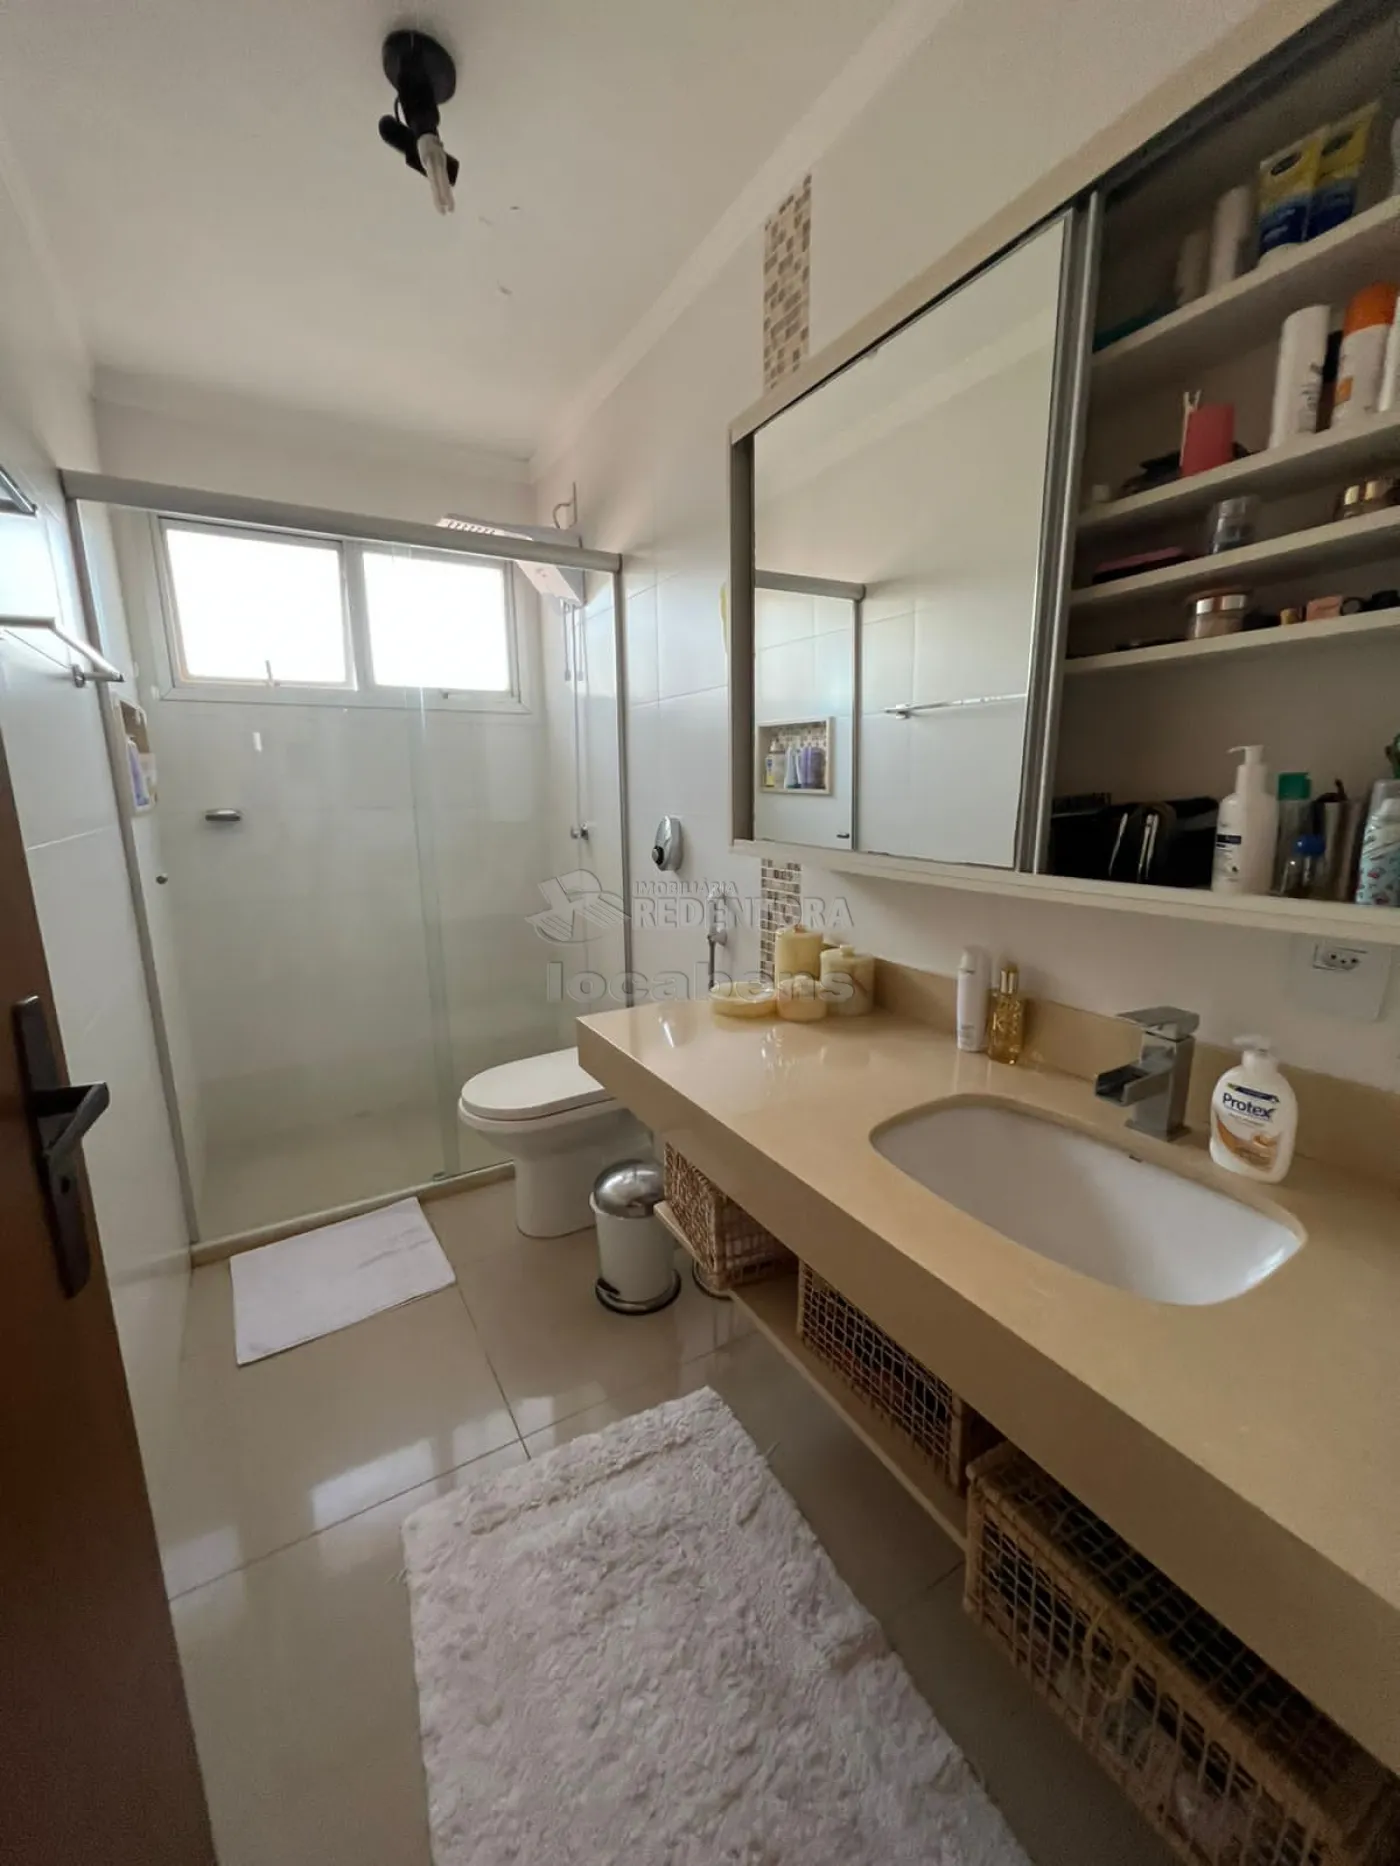 Comprar Apartamento / Padrão em São José do Rio Preto apenas R$ 450.000,00 - Foto 5